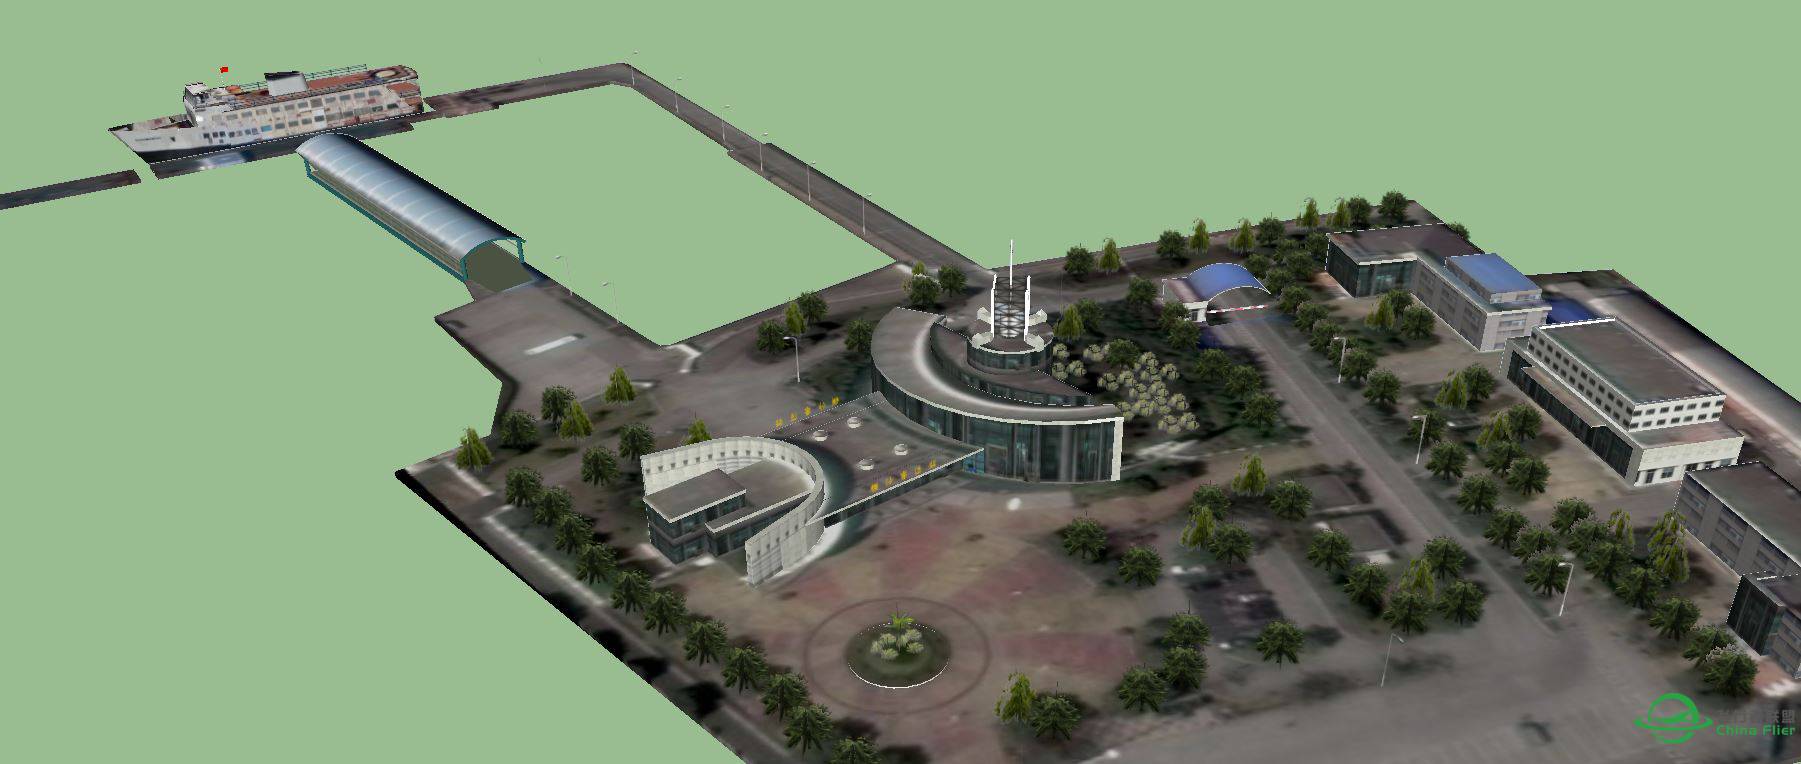 横沙岛地景的横沙客运码头建模完成-4309 